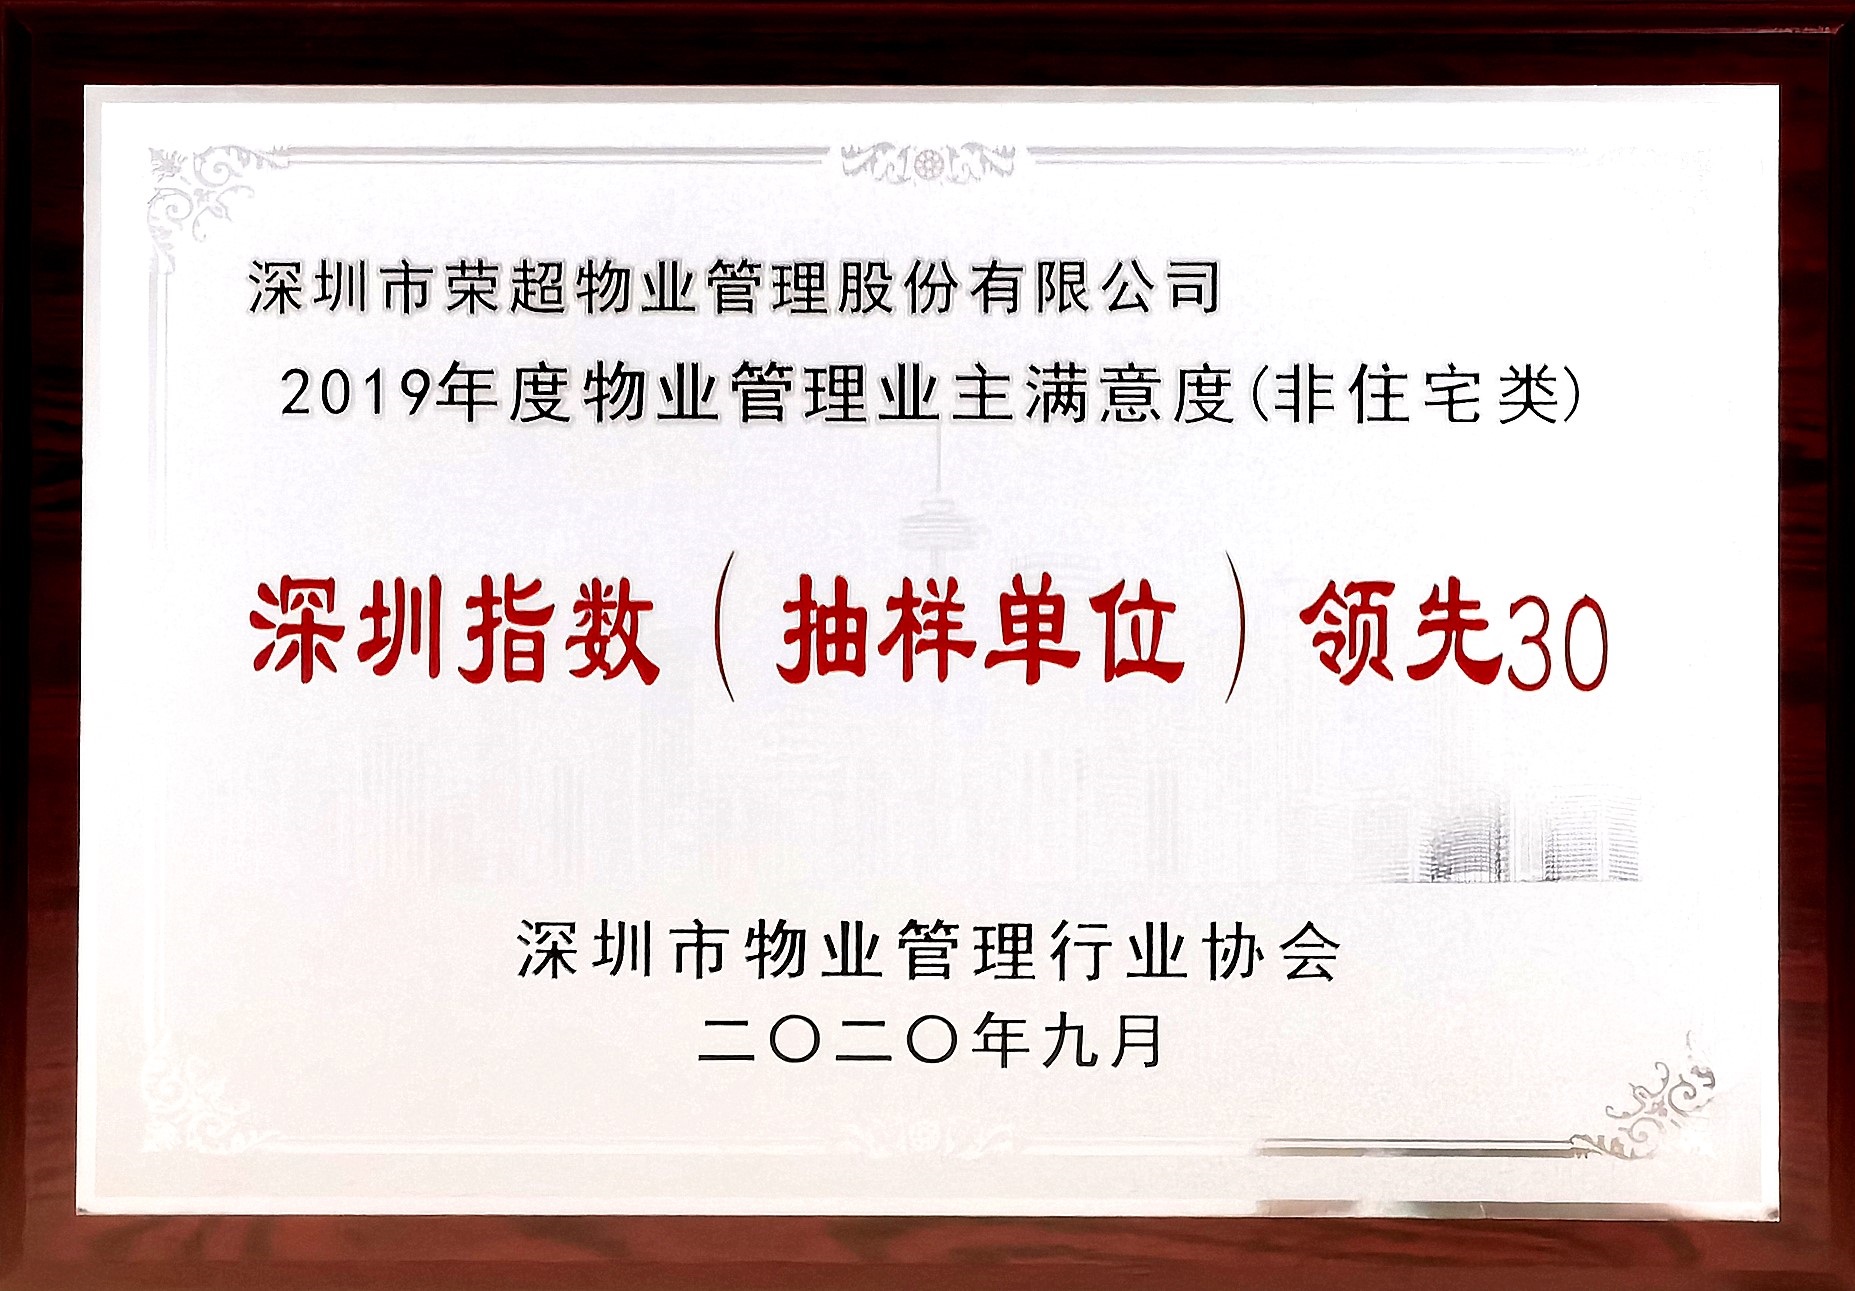 2019年度物业管理业主满意度深圳指数领先30